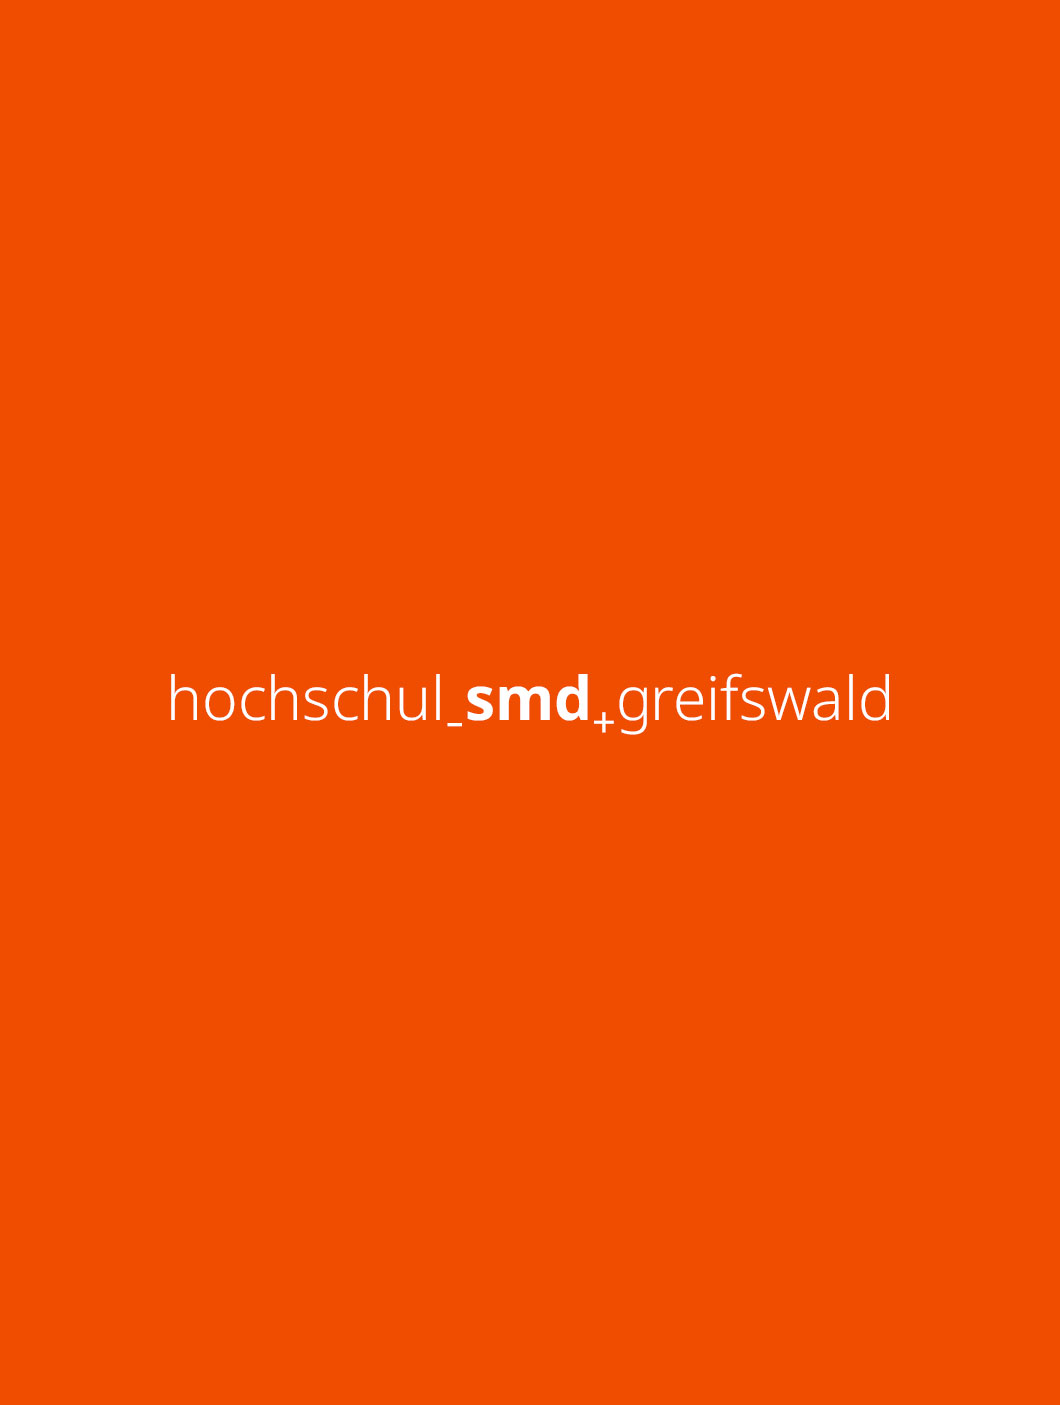 OJC-Greifswald: Banner für die Hochschule SMD Greifswald